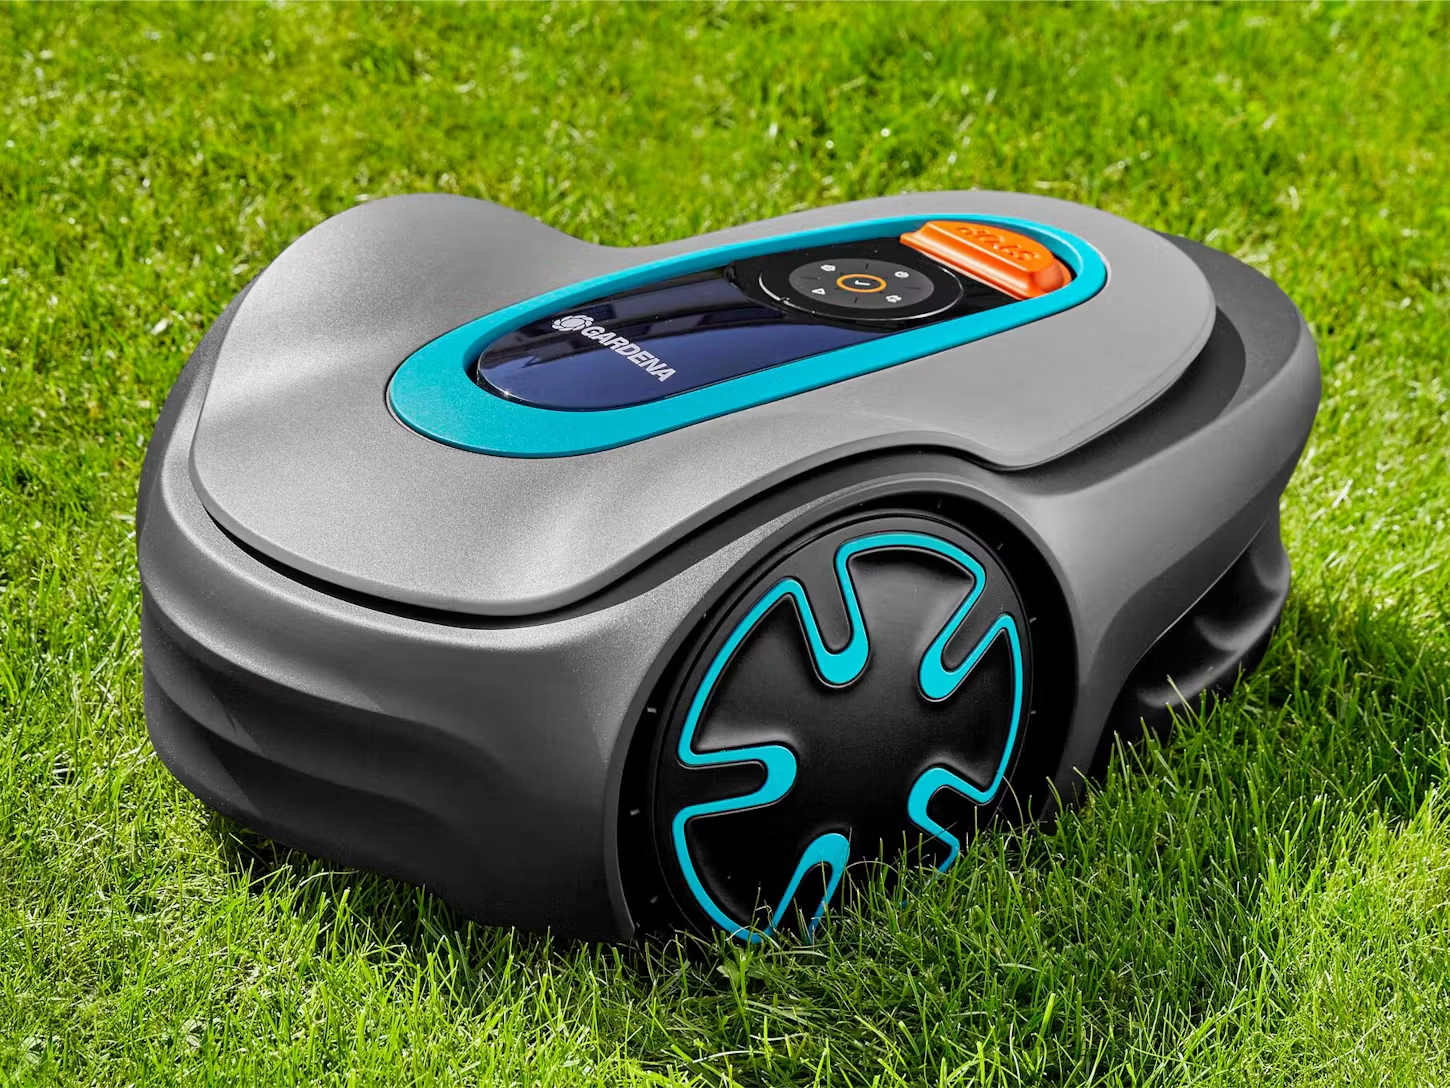 Best Robot Lawn Mower Nz